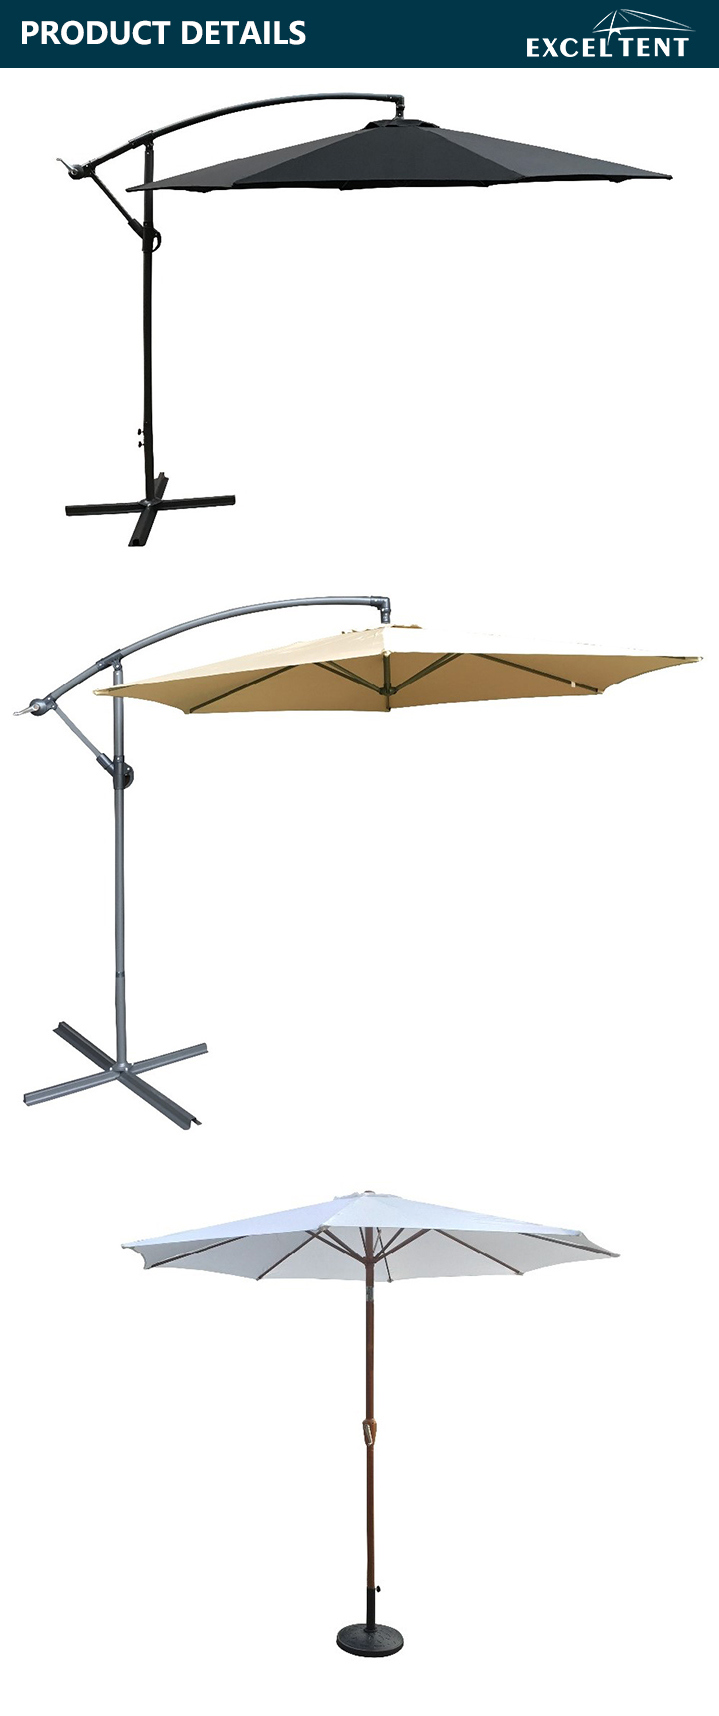 High Quality Leisure Outdoor Metal Garden Patio Umbrella